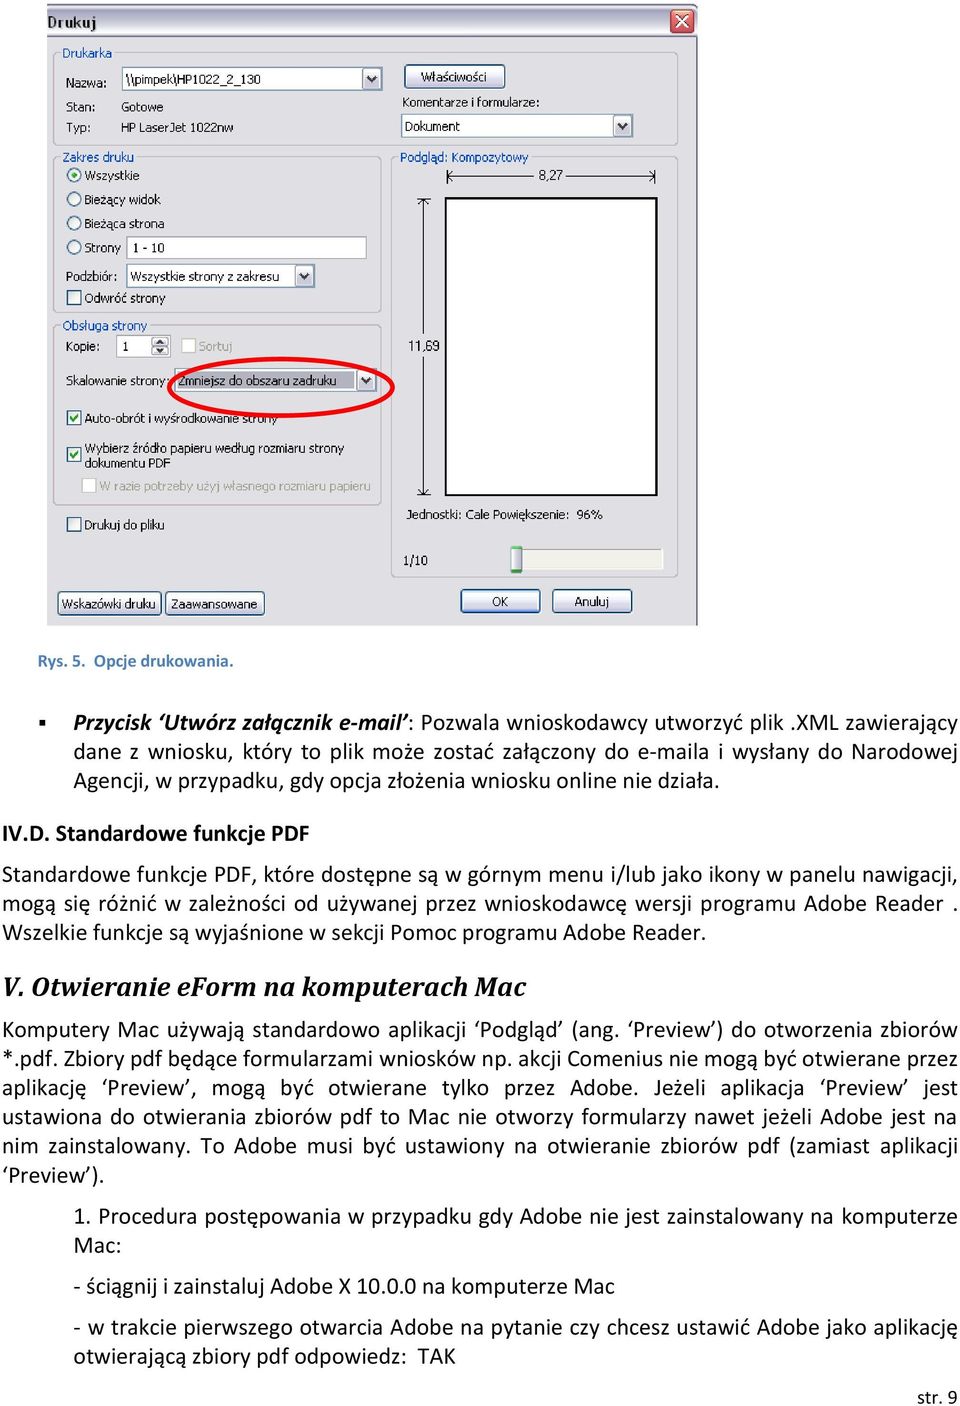 Standardowe funkcje PDF Standardowe funkcje PDF, które dostępne są w górnym menu i/lub jako ikony w panelu nawigacji, mogą się różnić w zależności od używanej przez wnioskodawcę wersji programu Adobe